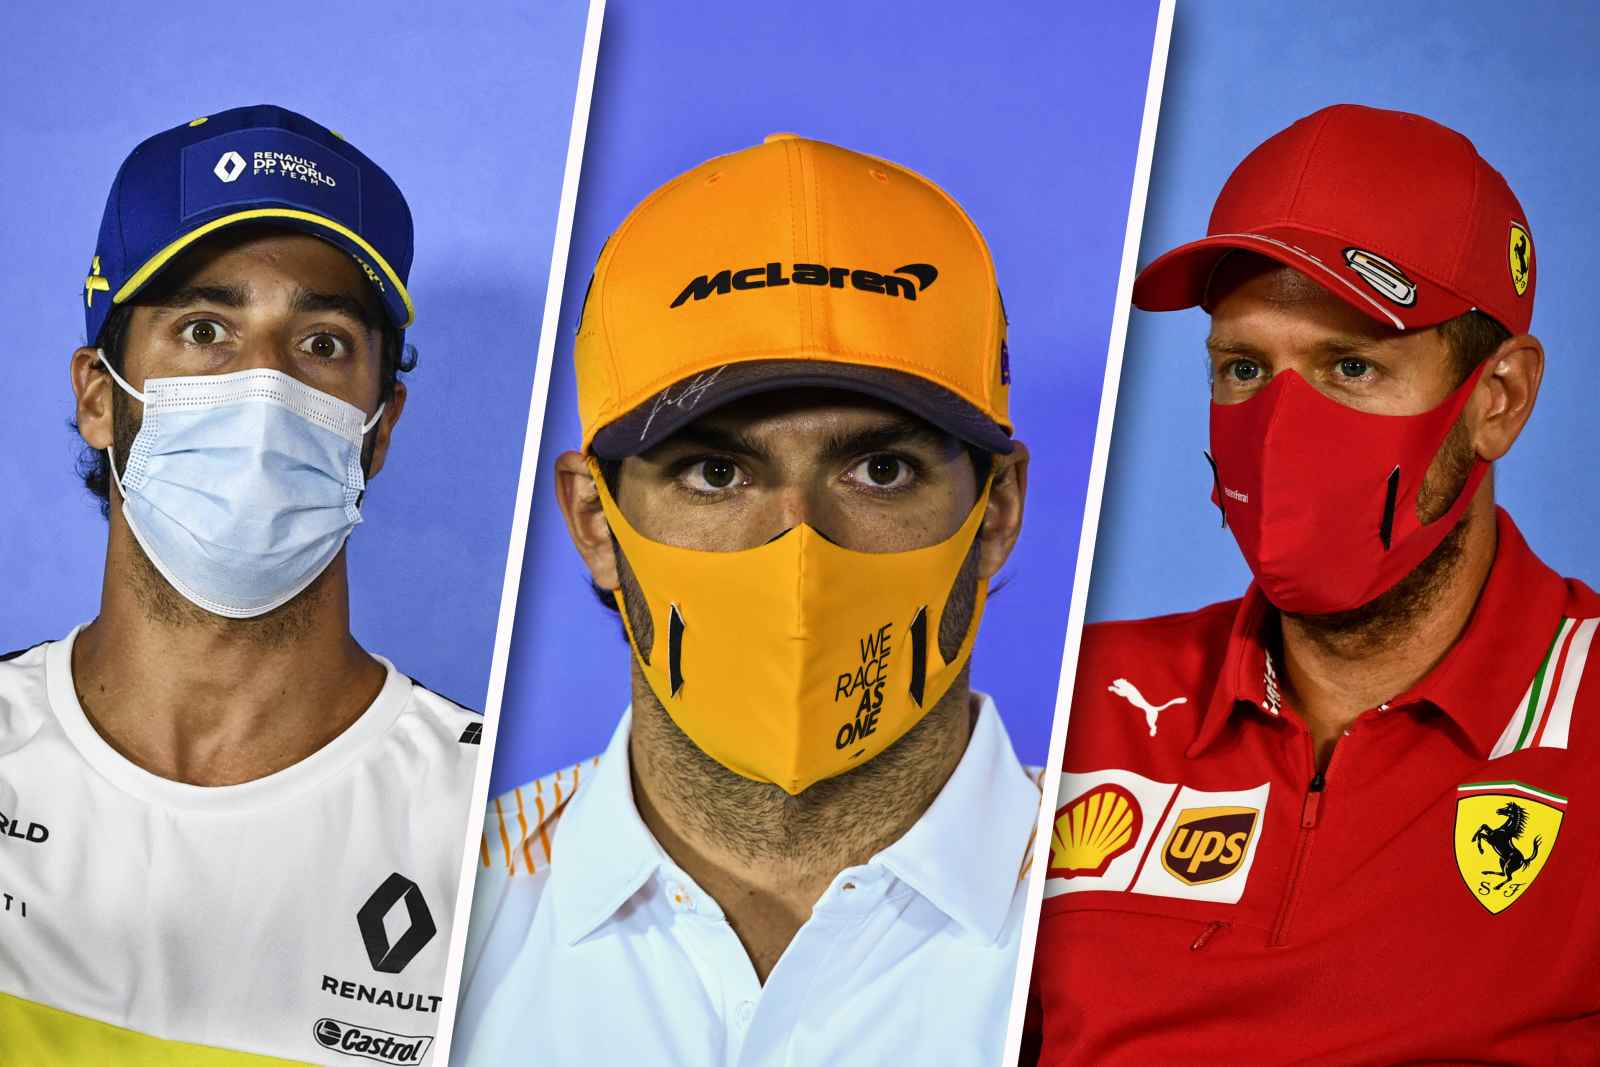 A Fórmula 1 está de volta, mas nas condições que já sabemos bem: todo mundo devidamente protegido no Red Bull Ring, palco da primeira etapa do campeonato, o GP da Áustria